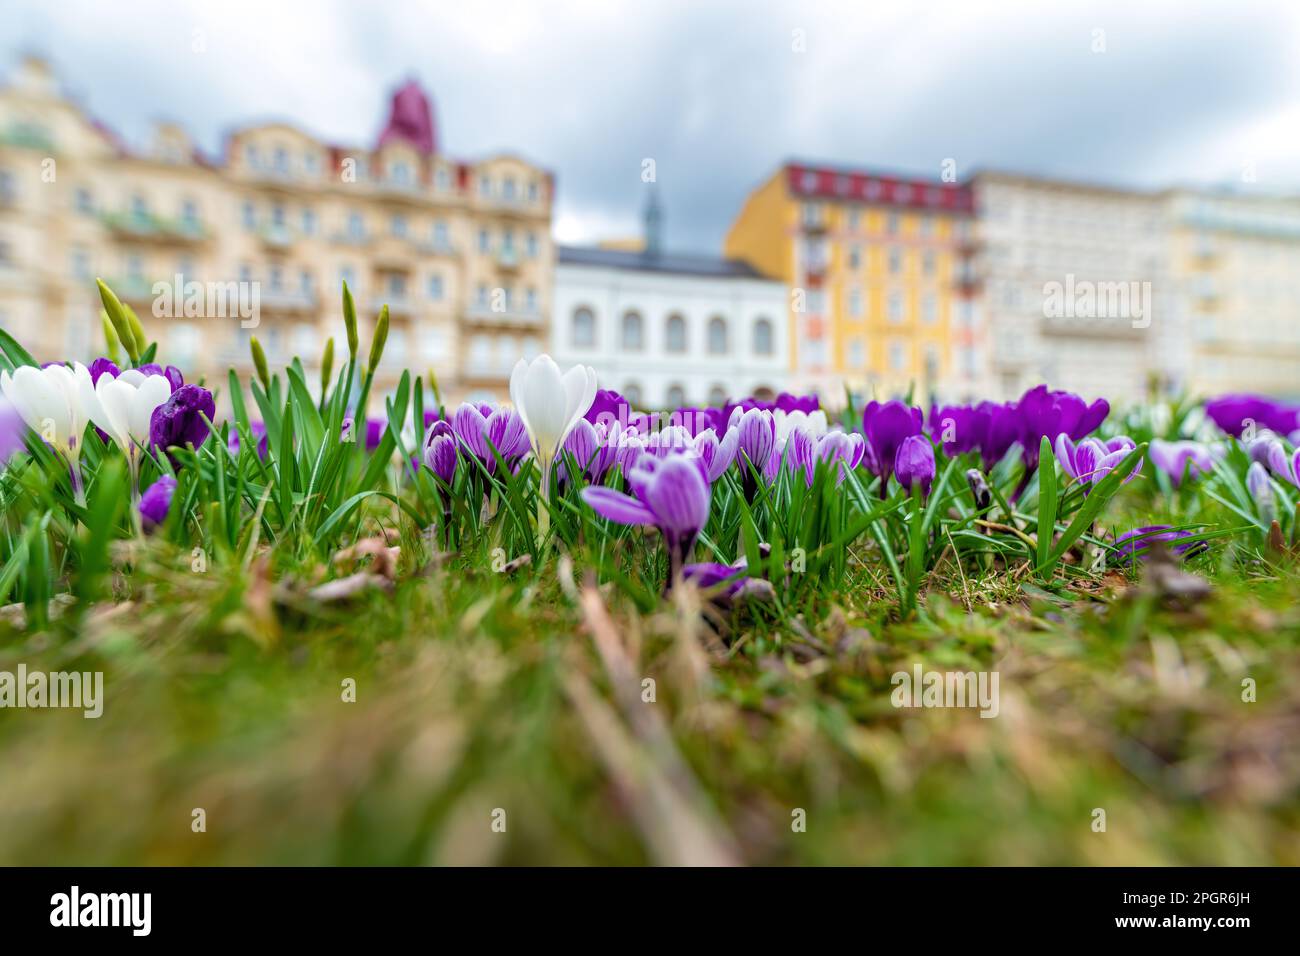 Frühling im Zentrum der tschechischen UNESCO-Kurstadt Mariánské Lázně (Marienbad) - ein blühender Park auf dem Friedensplatz - Tschechische Republik, Europa Stockfoto